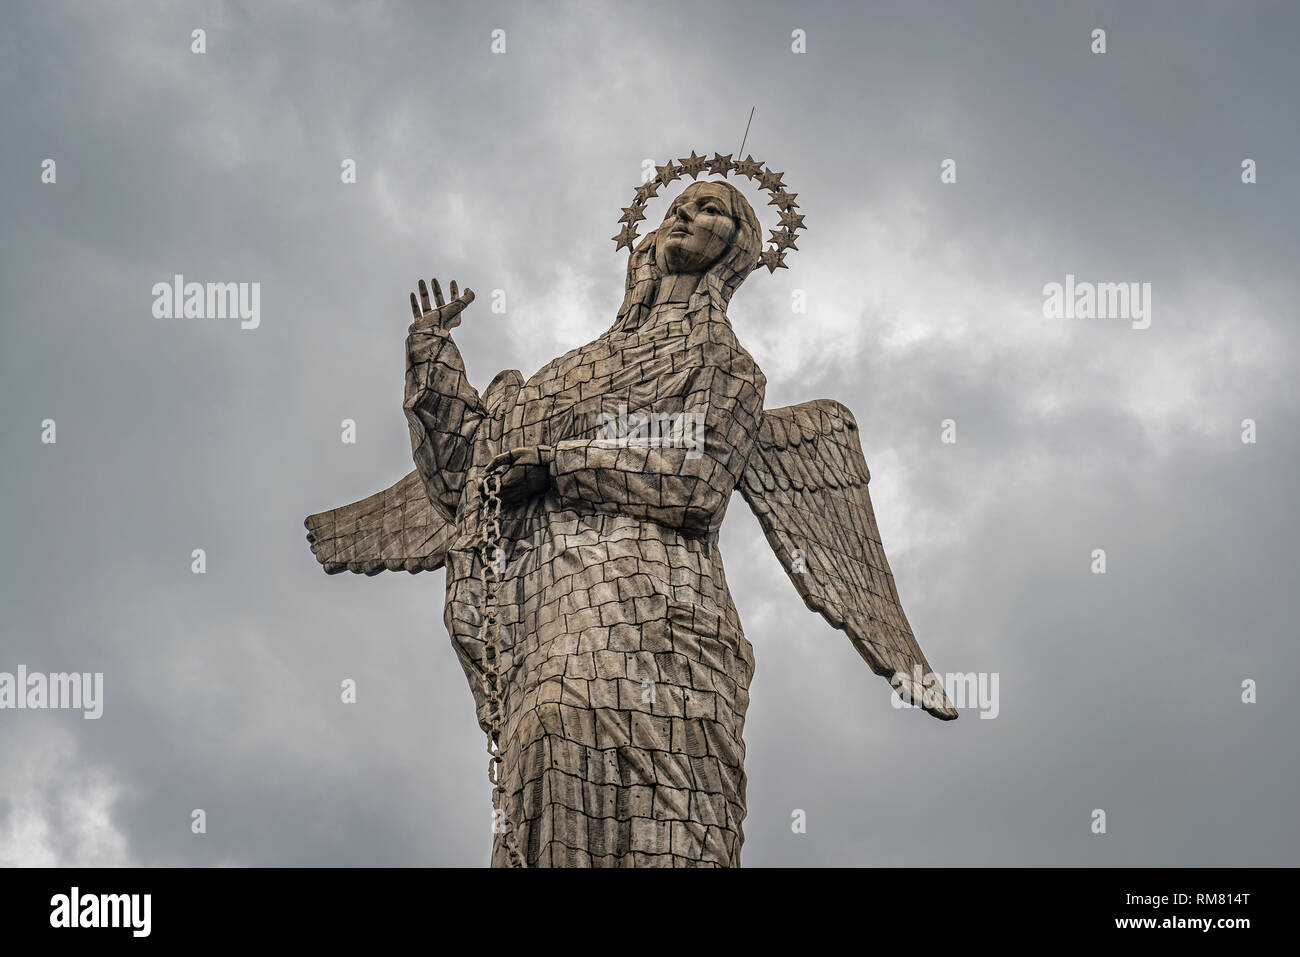 La statua della Vergine di Quito, noto anche come la Vergine alata o vergine apocalittico, nel centro della città di Quito sul Panecillo Hill, Ecuador. Foto Stock